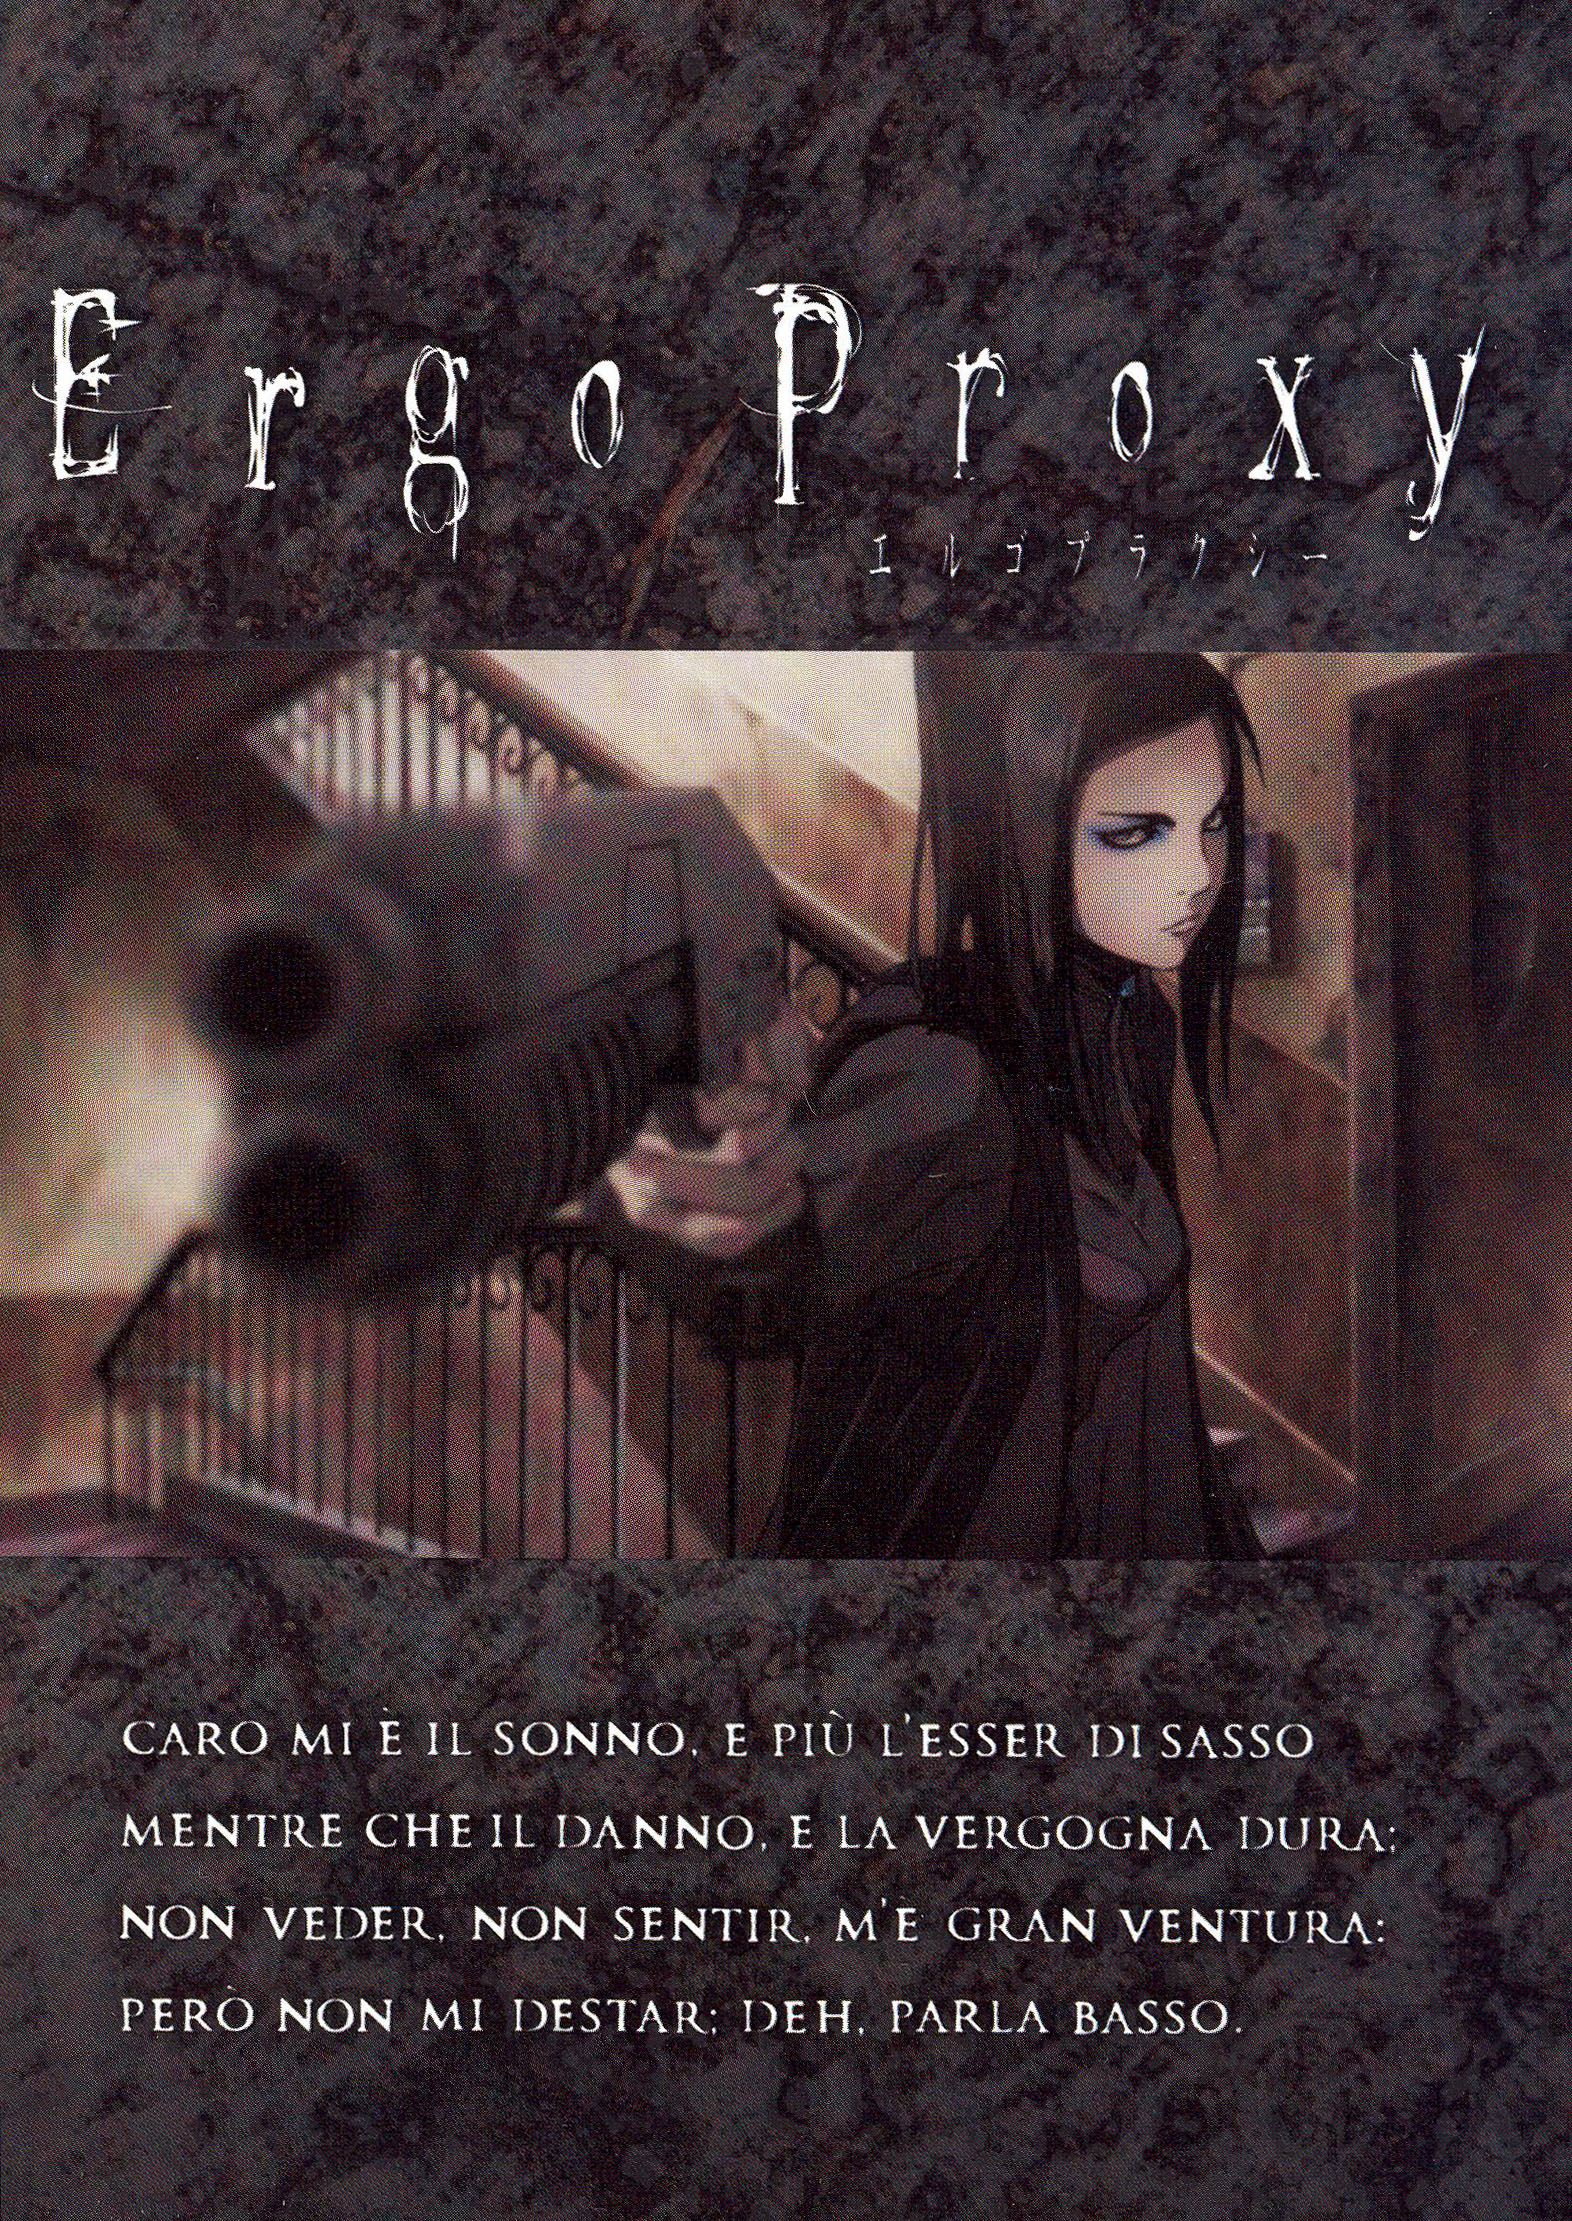 Ergo Proxy - Japan Powered